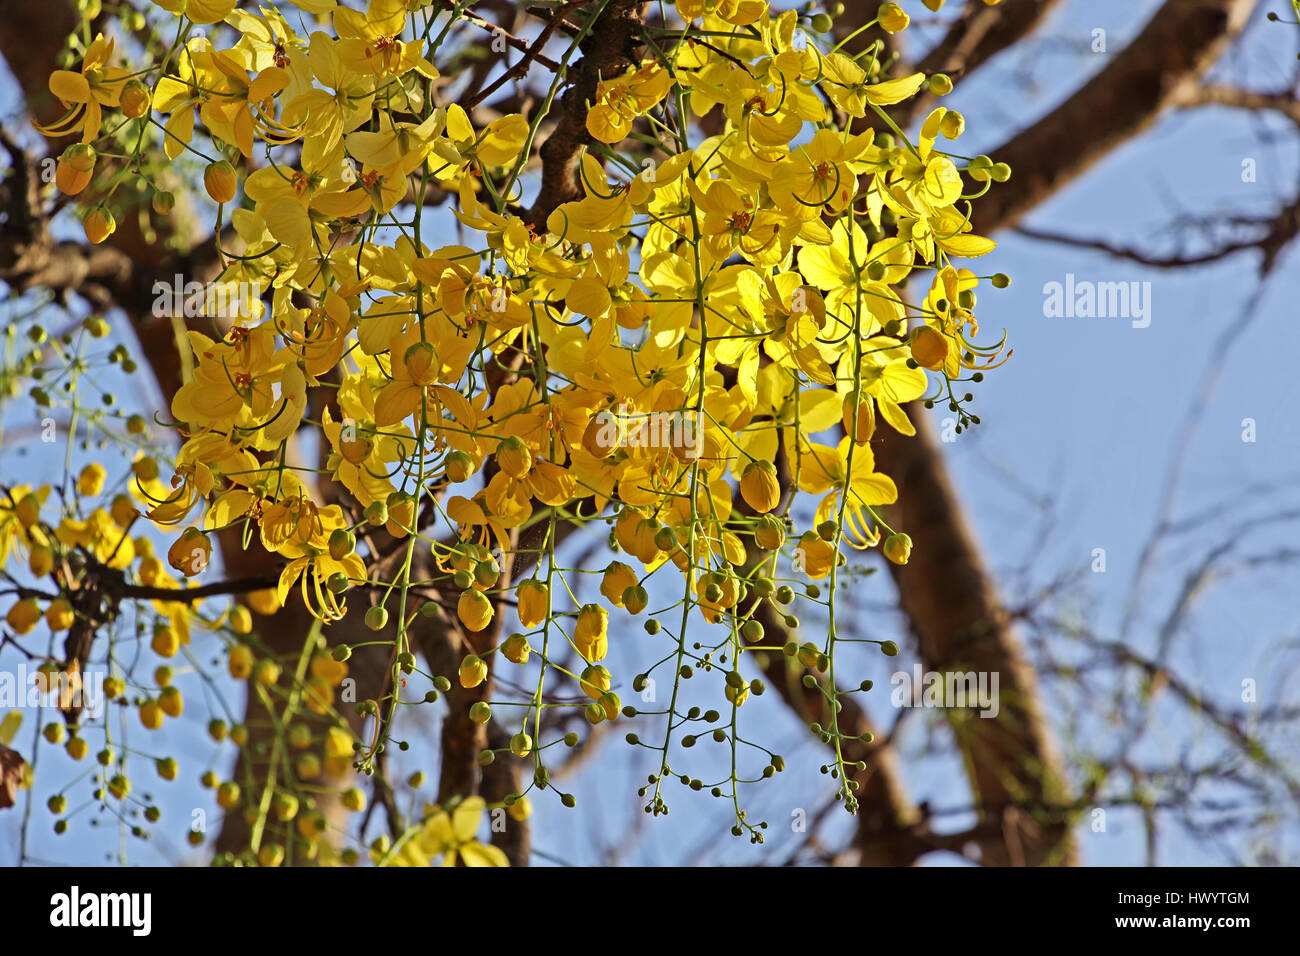 Goldene Dusche, Cassia Fistula, blühen im Baum. Konna in Kerala, Indien genannt und ist Bestandteil der hinduistischen Vishu Festspiele. Auch nationale Blume von Thailand. Stockfoto